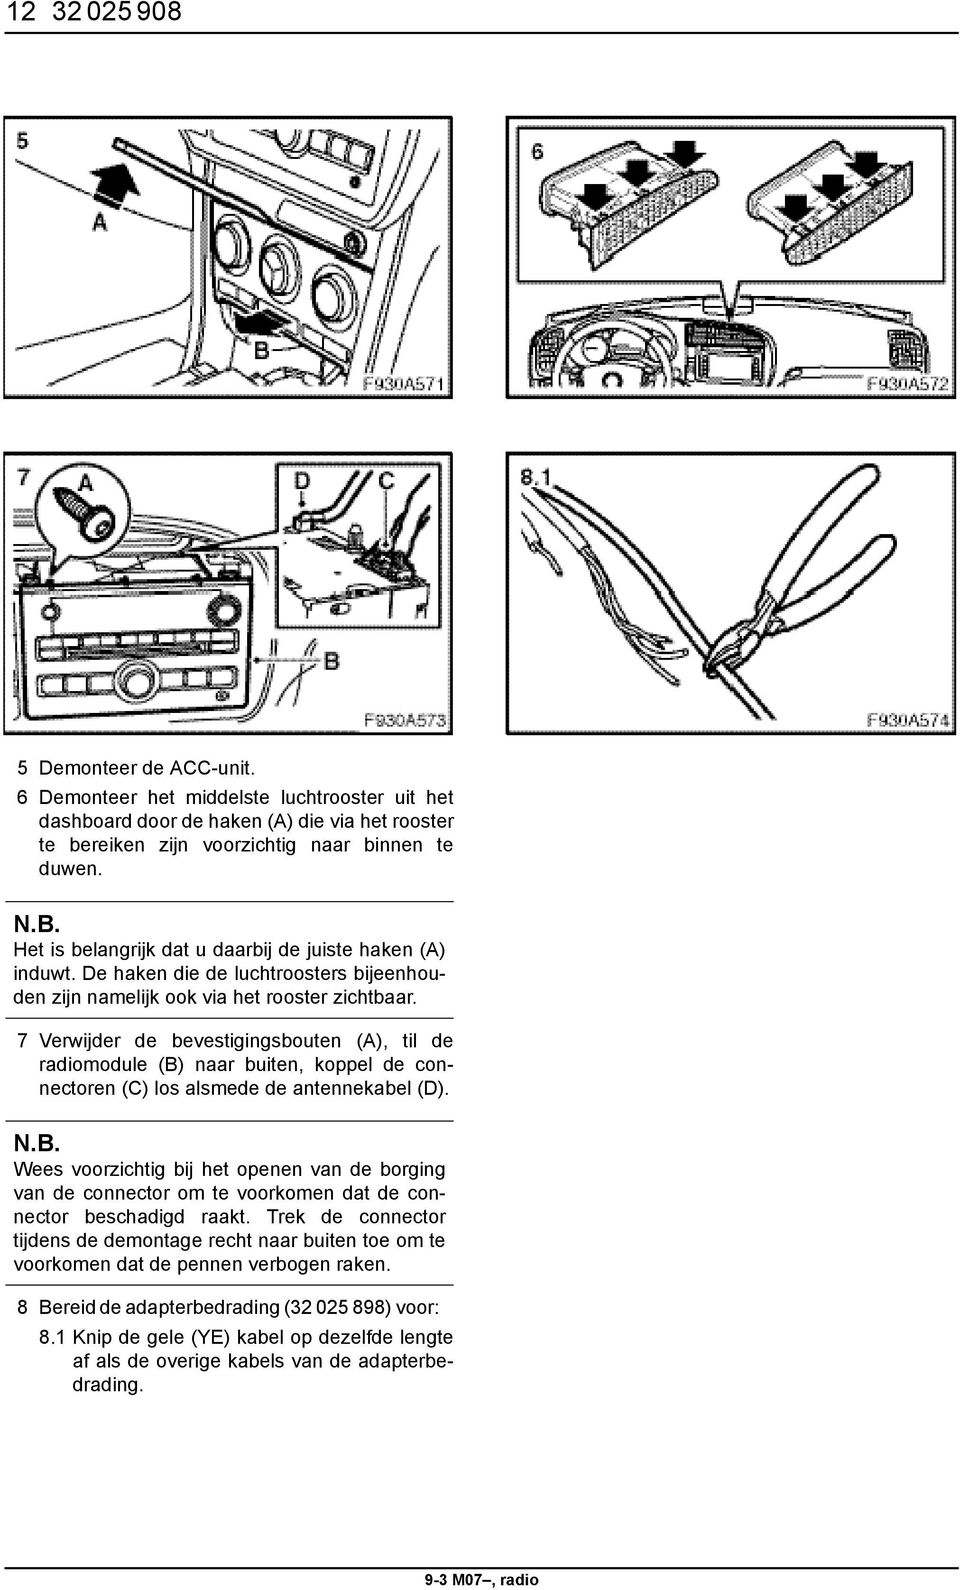 7 Verwijder de bevestigingsbouten (A), til de radiomodule (B) naar buiten, koppel de connectoren (C) los alsmede de antennekabel (D).